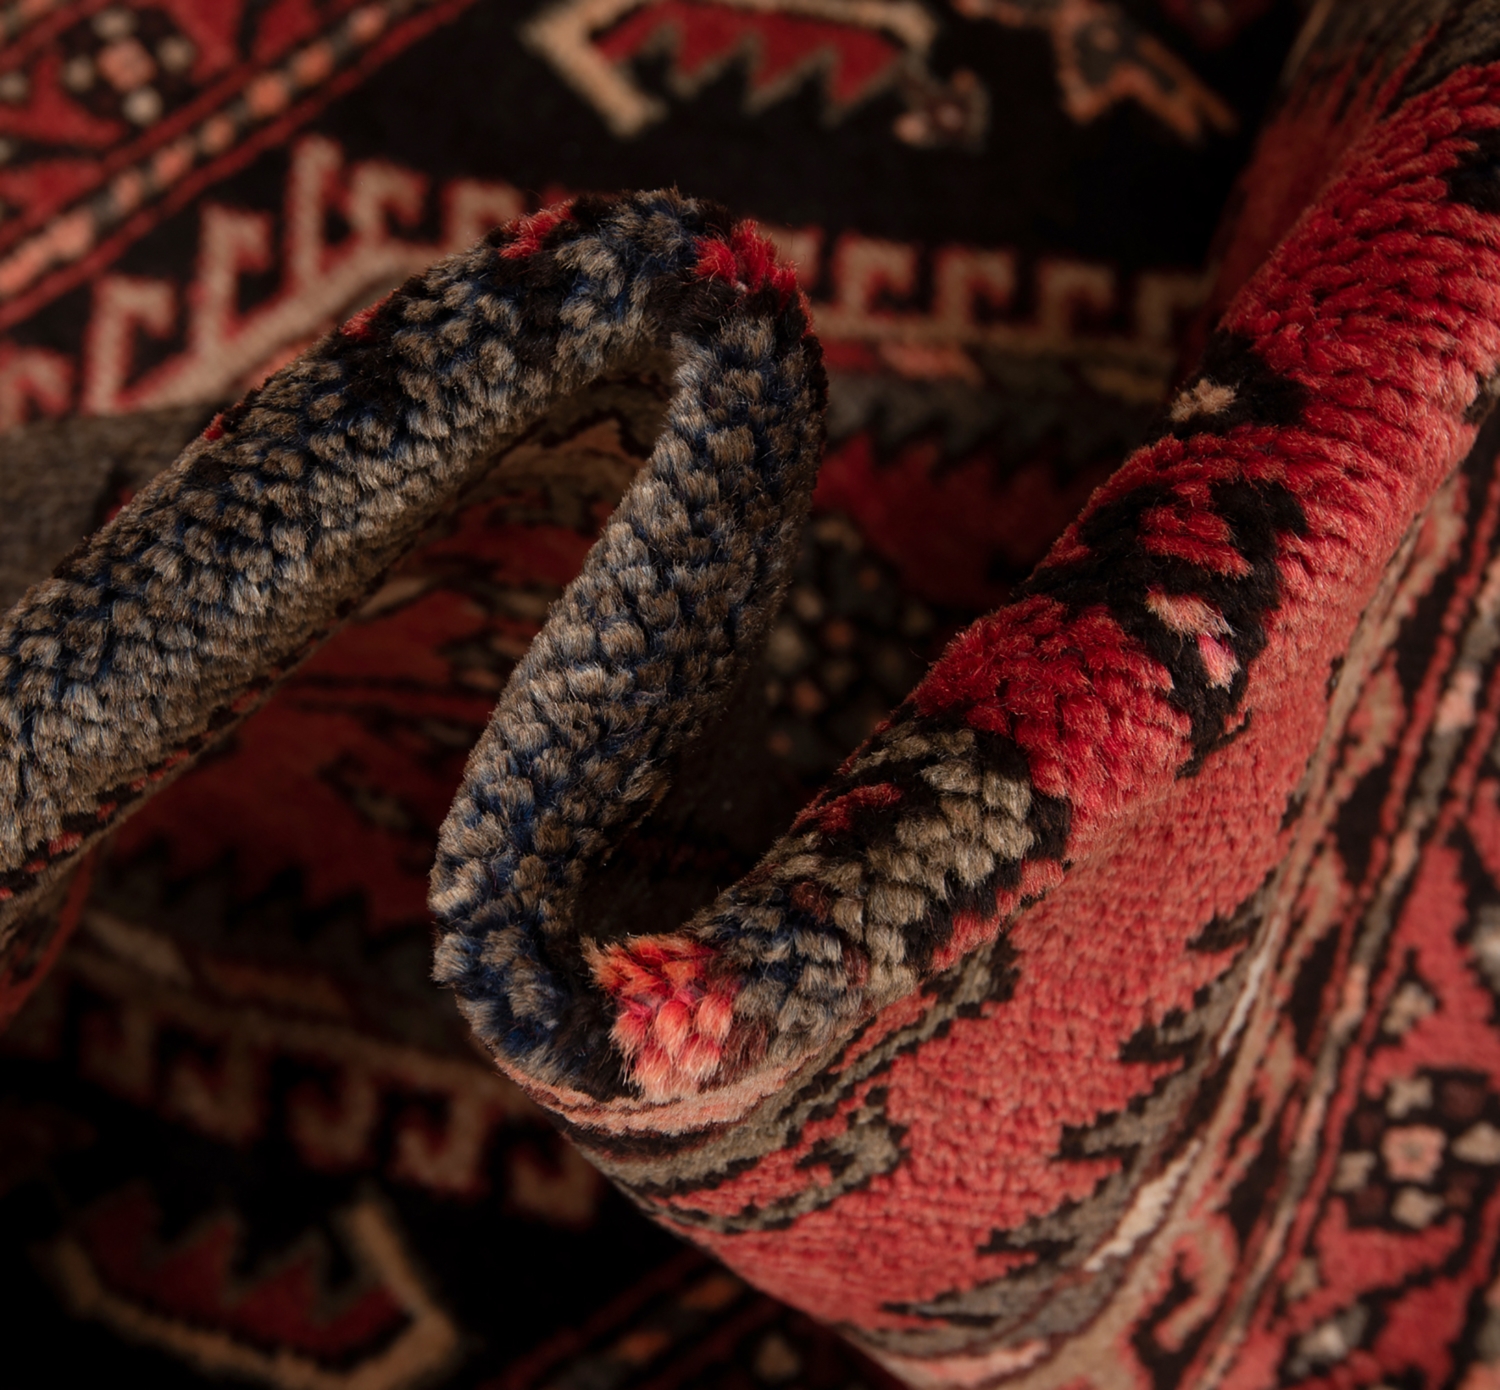 Zanjan Persian Rug